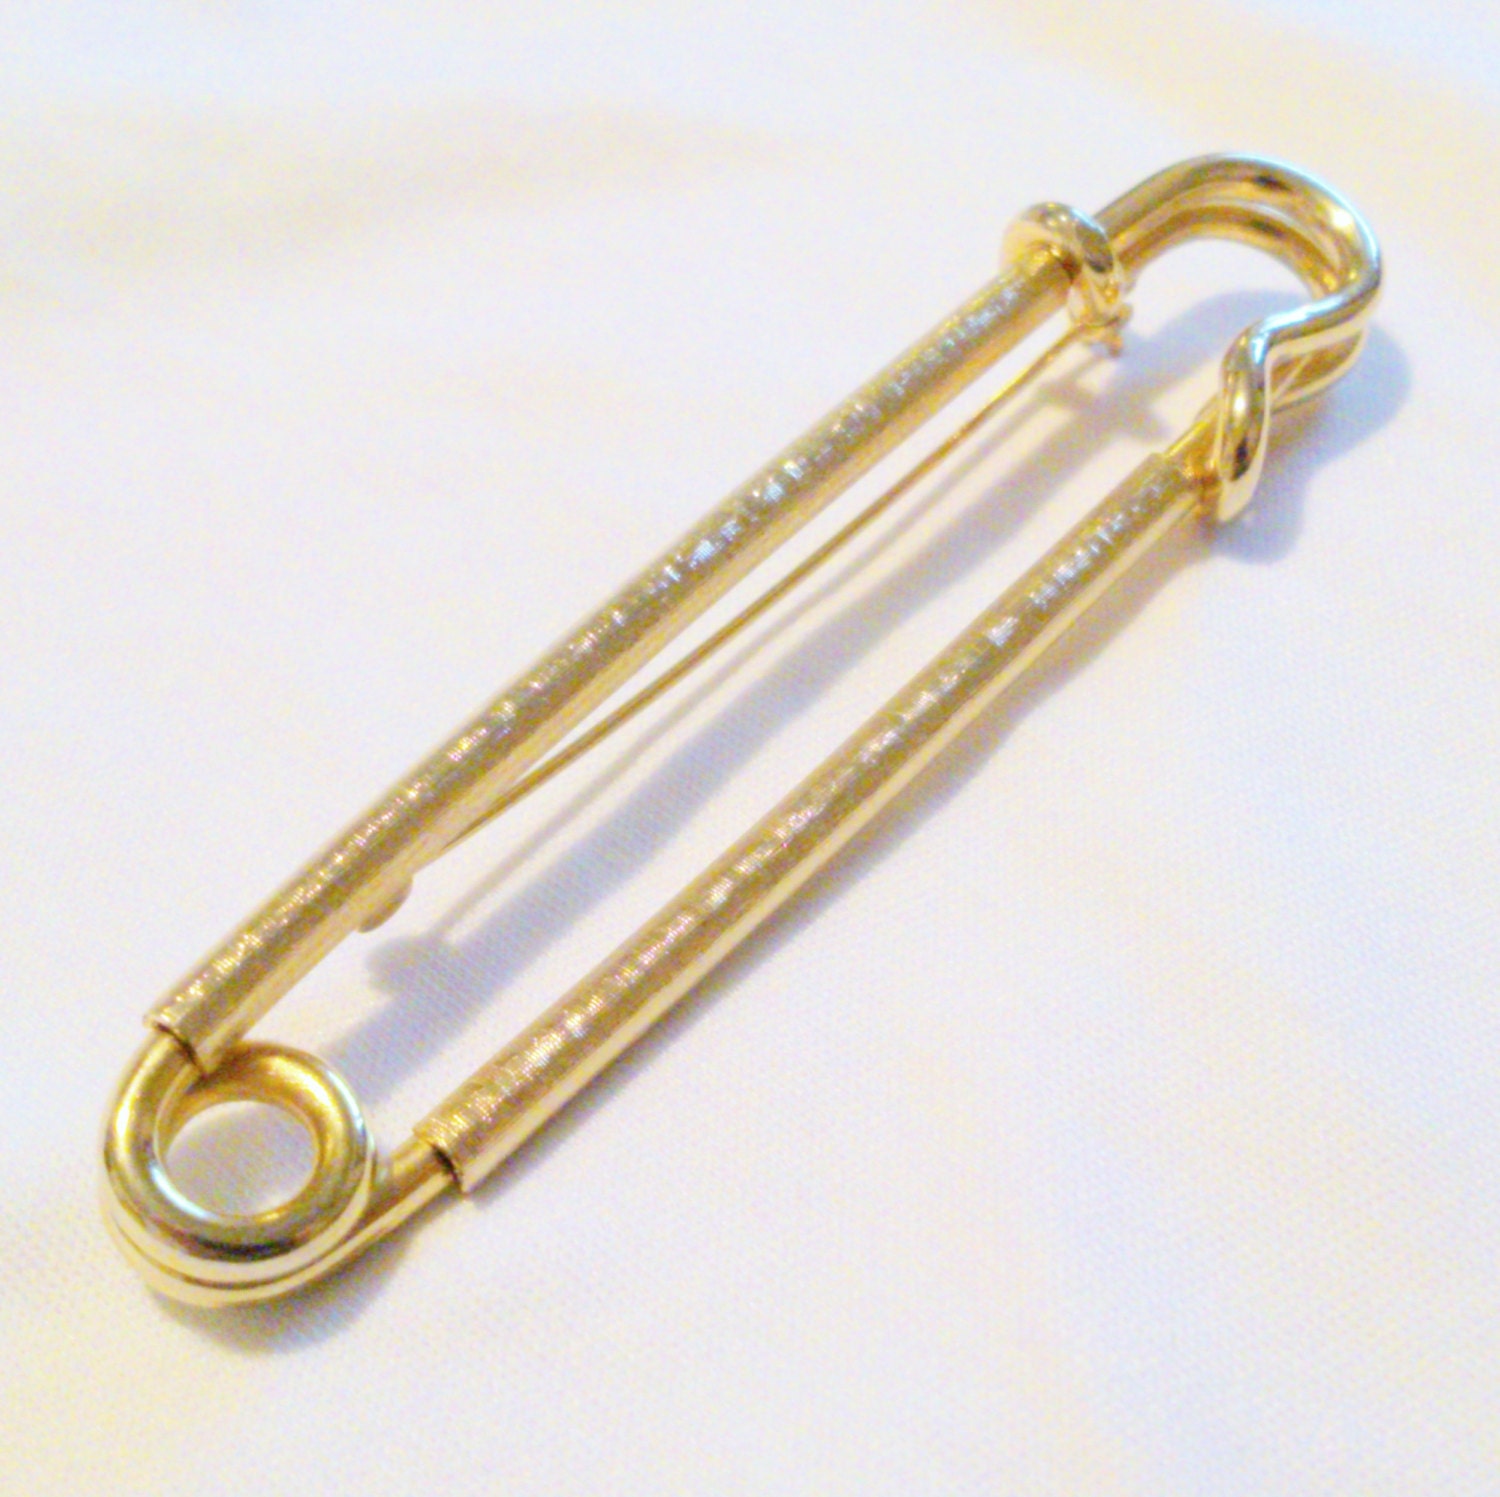 Vintage Oversized Safety Pin Kilt Pin Brooch